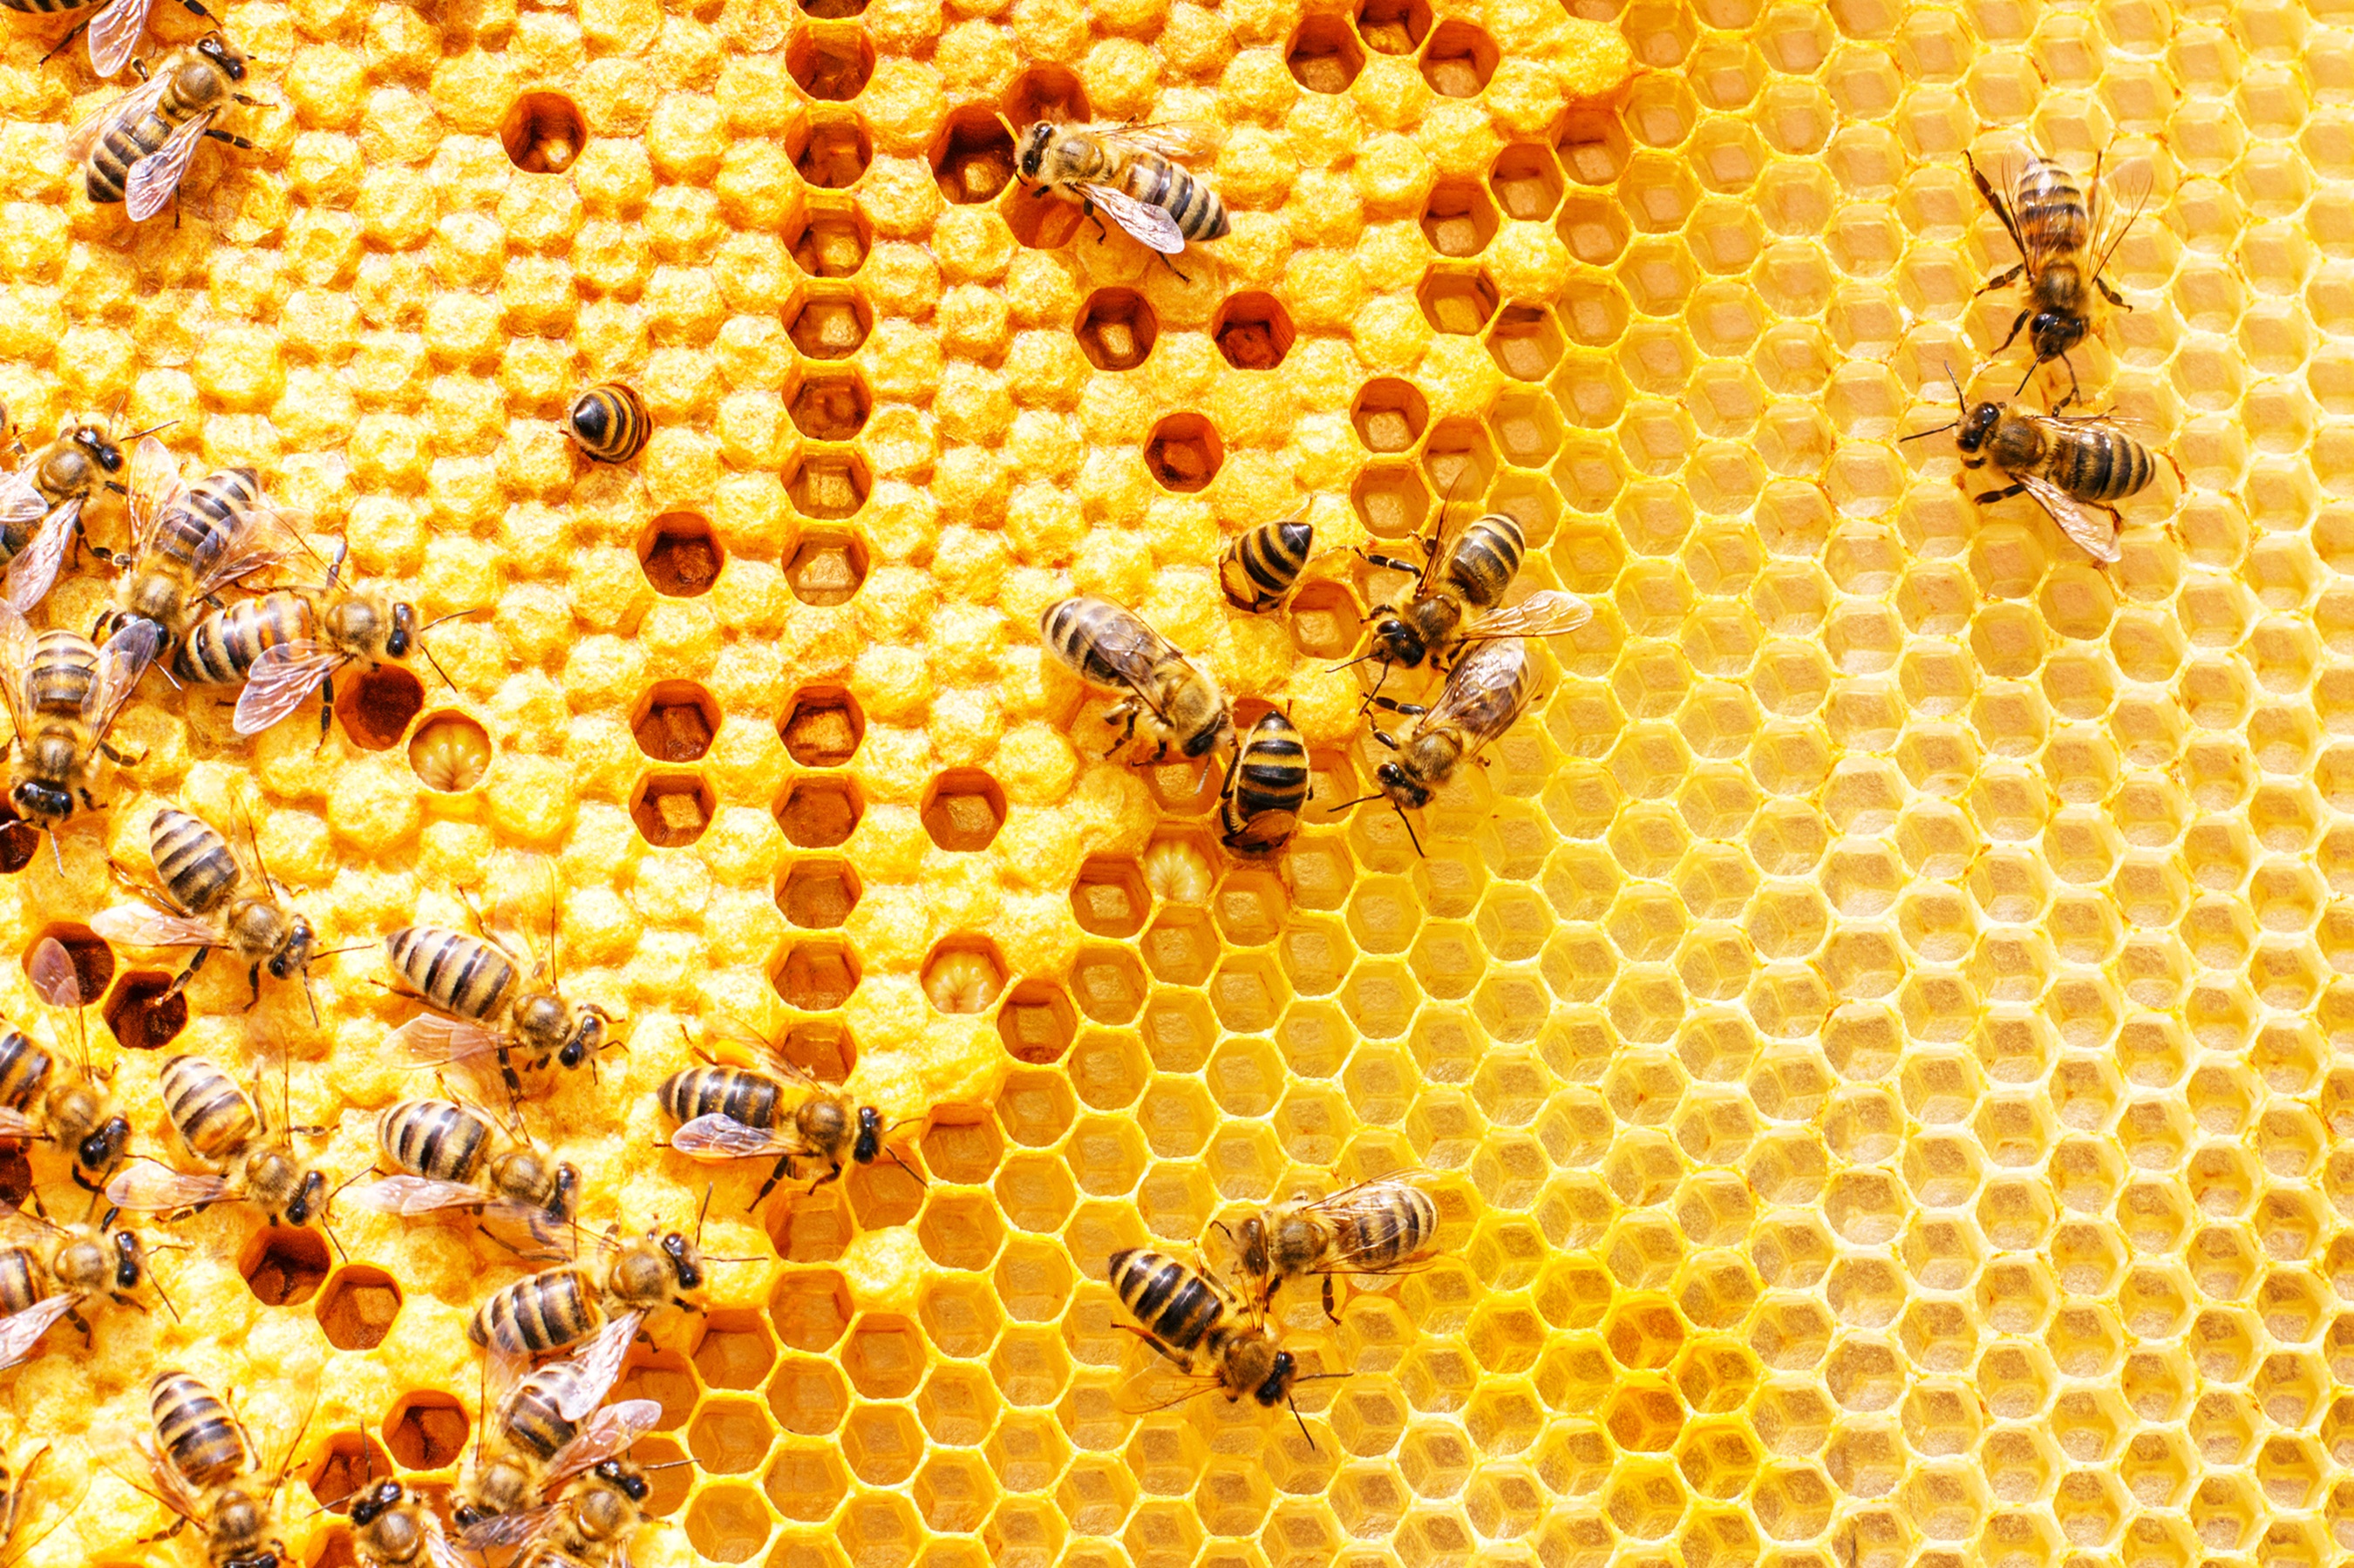 bee pollen benefits